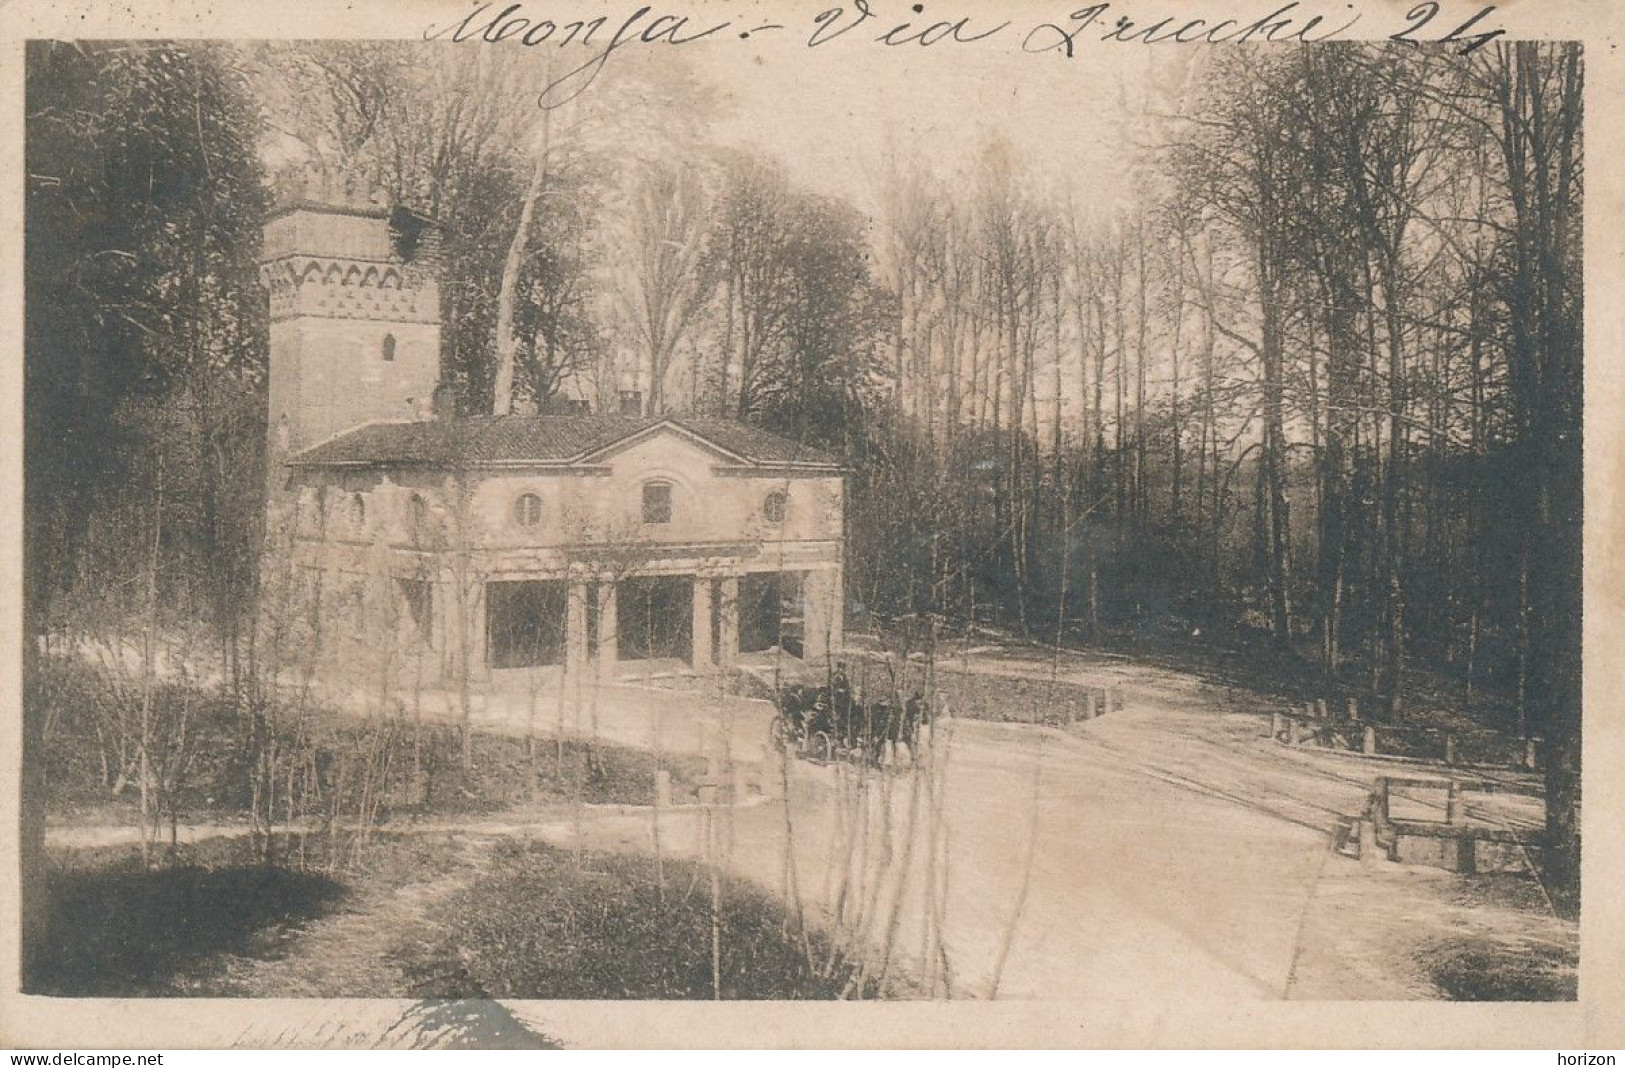 2h.309  MONZA - Regio Parco (Molino) - 1923 - Monza